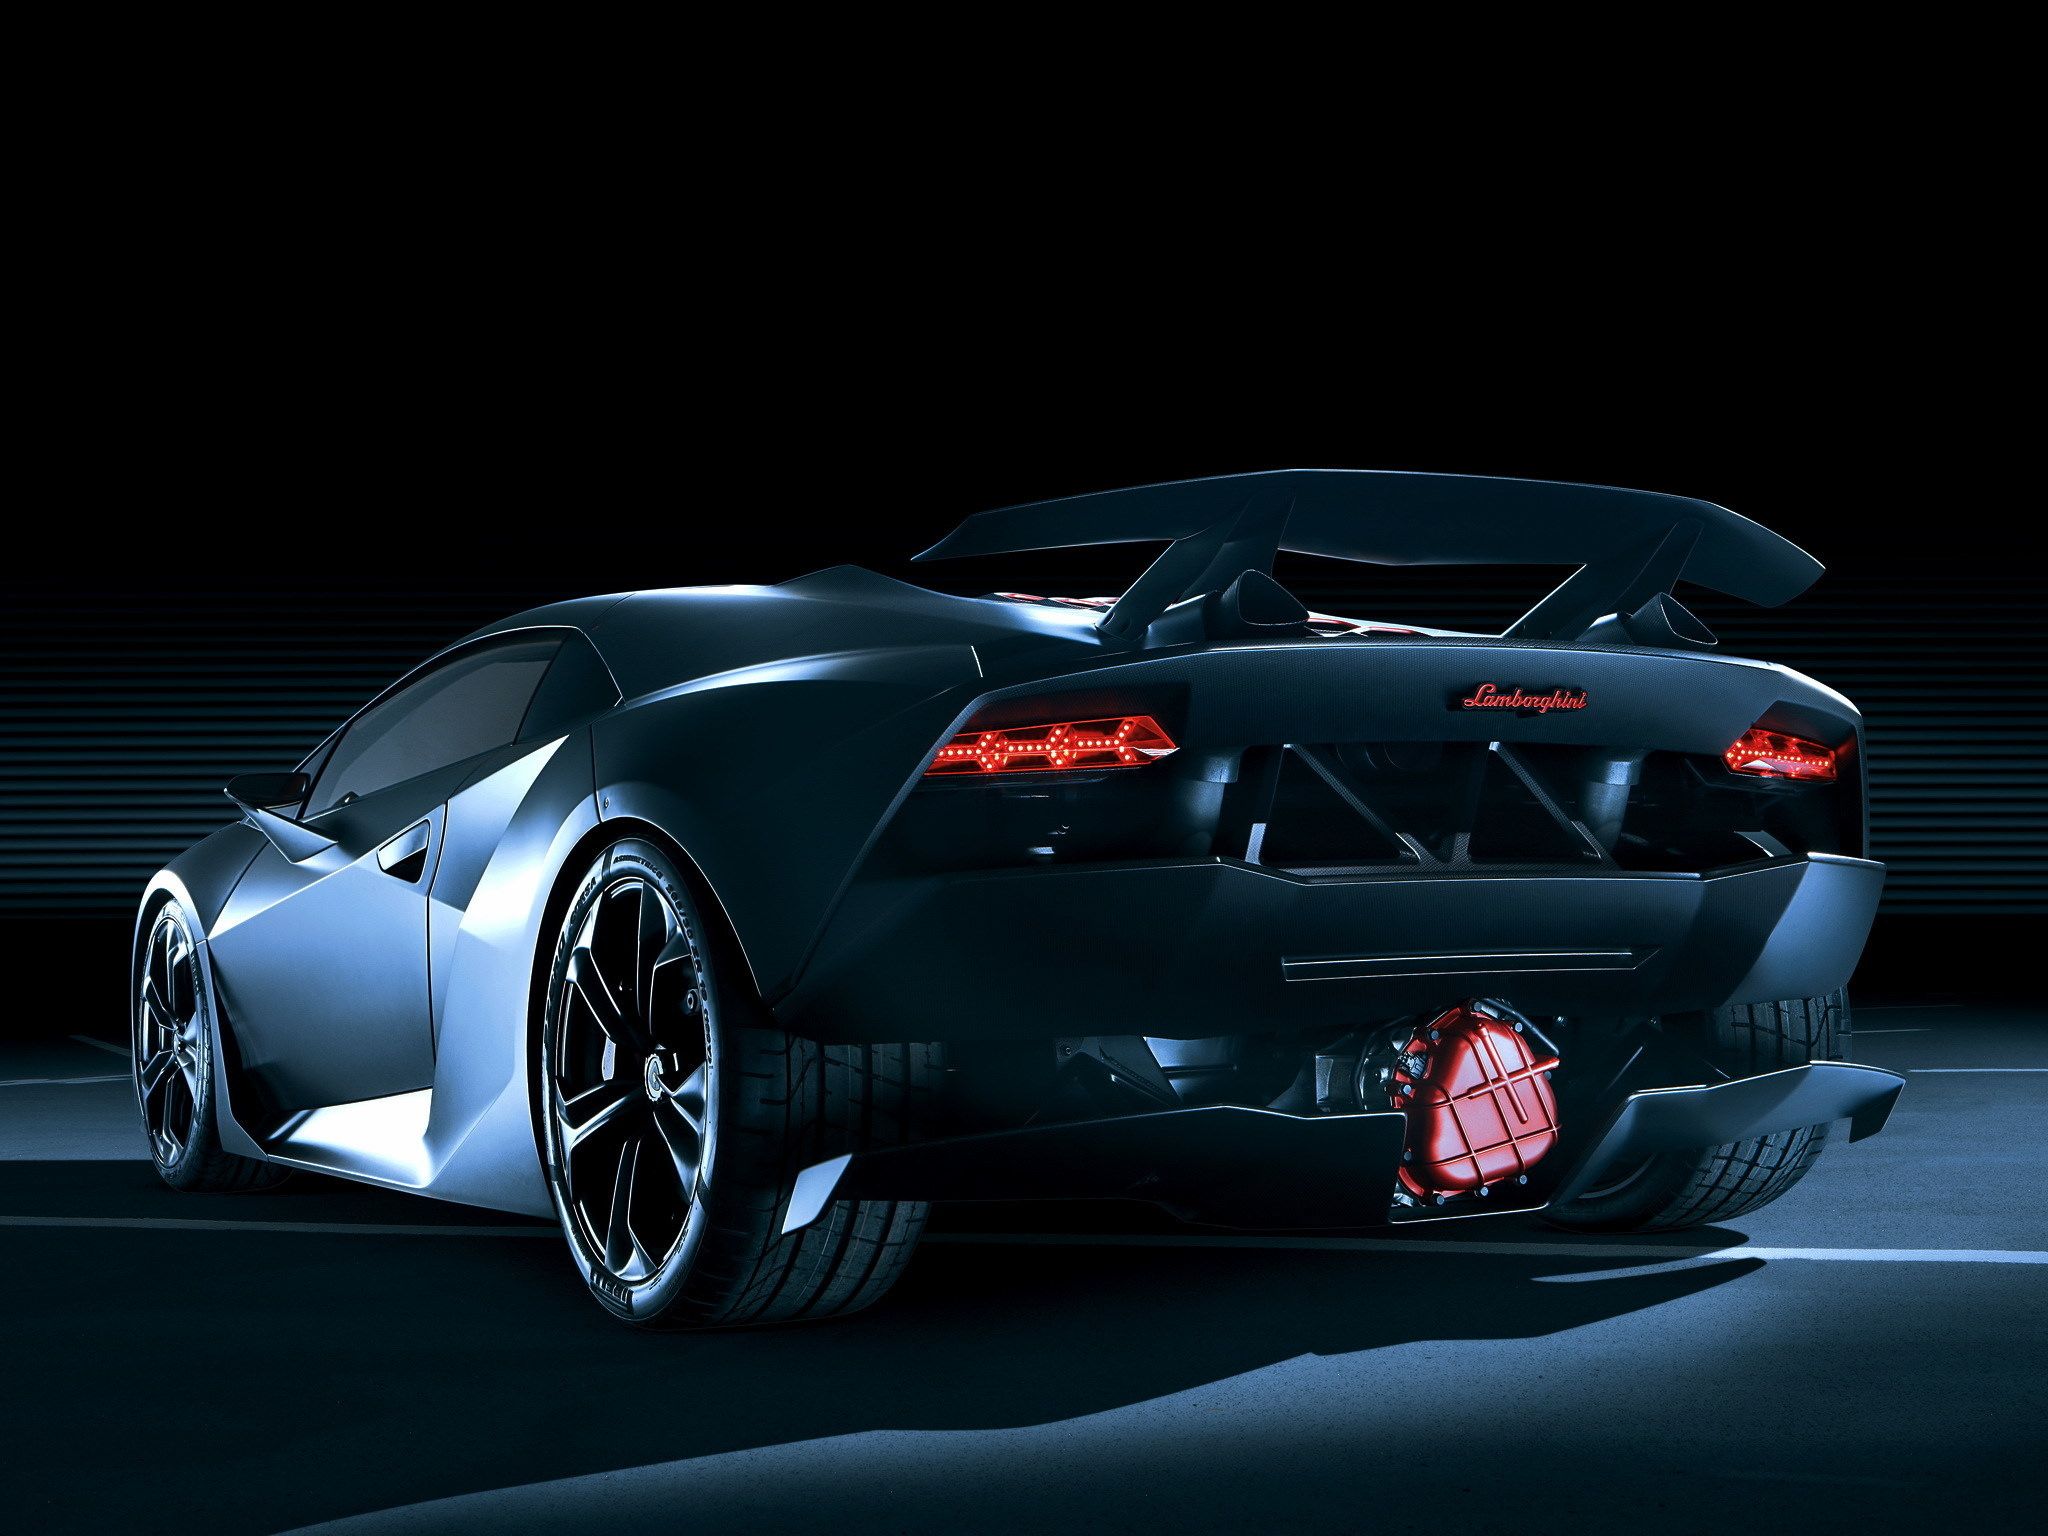 Lamborghini Sesto Elemento Limited Edition - HD Wallpaper 